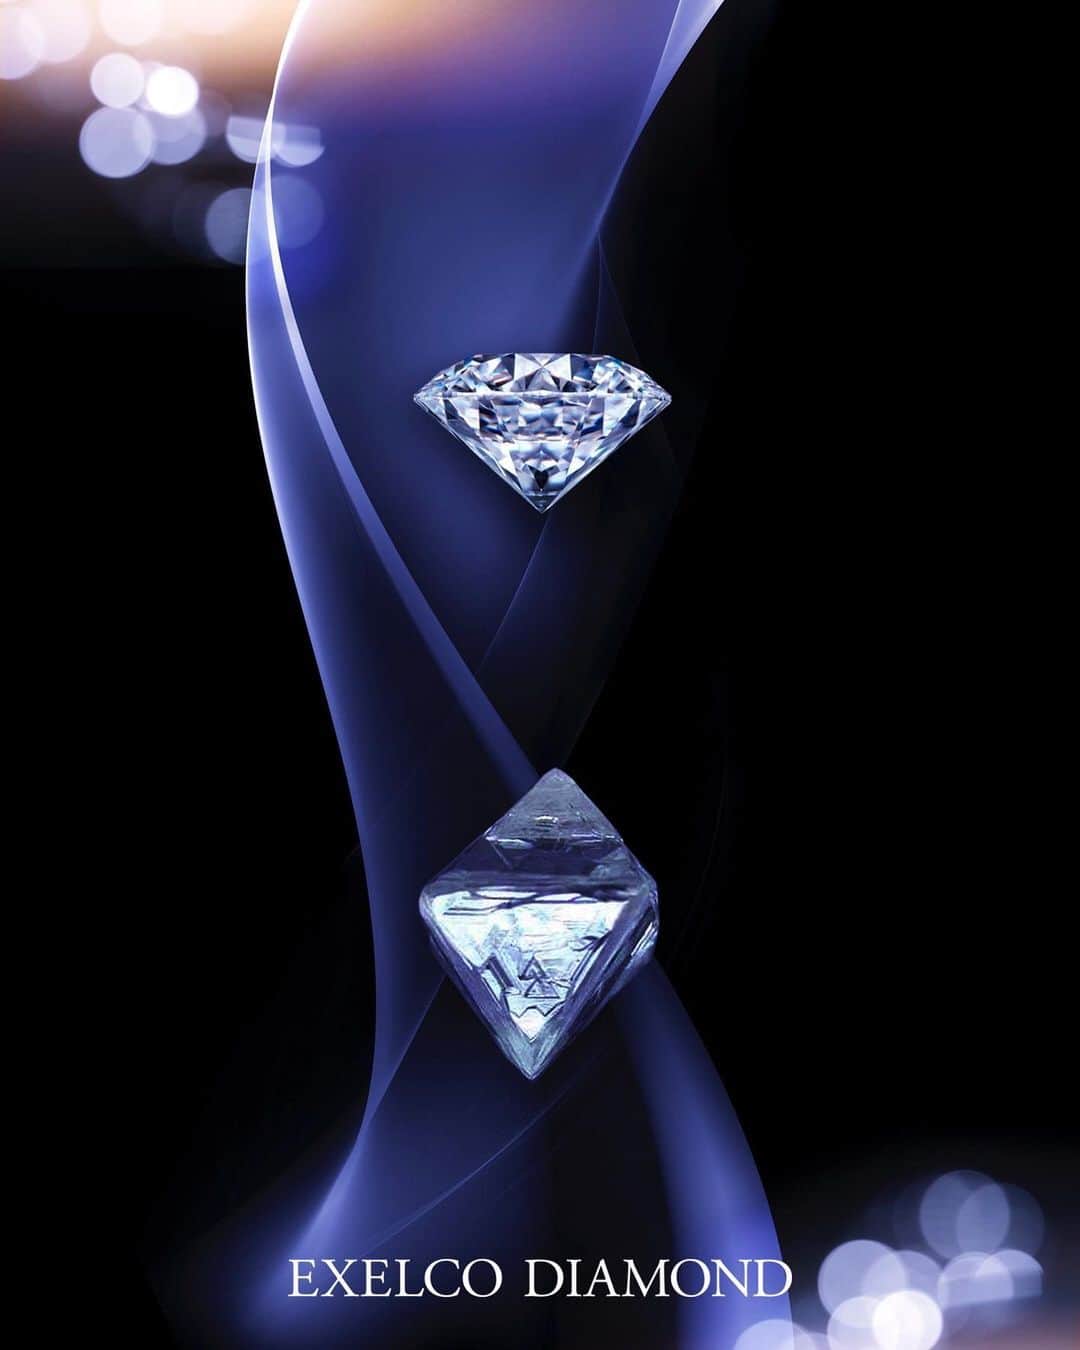 エクセルコ ダイヤモンド 婚約指輪♔結婚指輪のインスタグラム：「. サリネ・ライト “ダイヤモンドジャーニー”世界初導入 . 輝きの４つの項目（ブリリアンス・ スパークル・ファイア・スパークル）を数値化し、 分析・評価する「サリネ・ライト」がグレードアップ。 . どんな原石の形だったのか、 そこからどうカットされたのかをひとつひとつの ダイヤモンド固有のQRコードからオンライン上で 確認できる新しいシステムを、 この夏、導入いたしました。 . このダイヤモンドは、どんな方と出会うのか‥ 人生の大切な瞬間を見守る存在であってほしい。 そんな想像をしながらダイヤモンドを創出してきた トルコウスキー一族。  カット発明100周年の今年に、 ダイヤモンドジャーニーの導入を実現いたしました。 . . エクセルコ ダイヤモンド展 ―よみがえりし、幻のティアラー . ※当イベントは、 ベルギー大使館から後援を受けております。 . ■会期：7.13sat〜8.25sun .. 11:00〜20:00 （最終入場19:30) . ■会場：テレビ朝日 EXシアター六本木 .. 17F 特設会場 東京都港区西麻布1丁目2-9 . #エクセルコダイヤモンド #exelcodiamond」